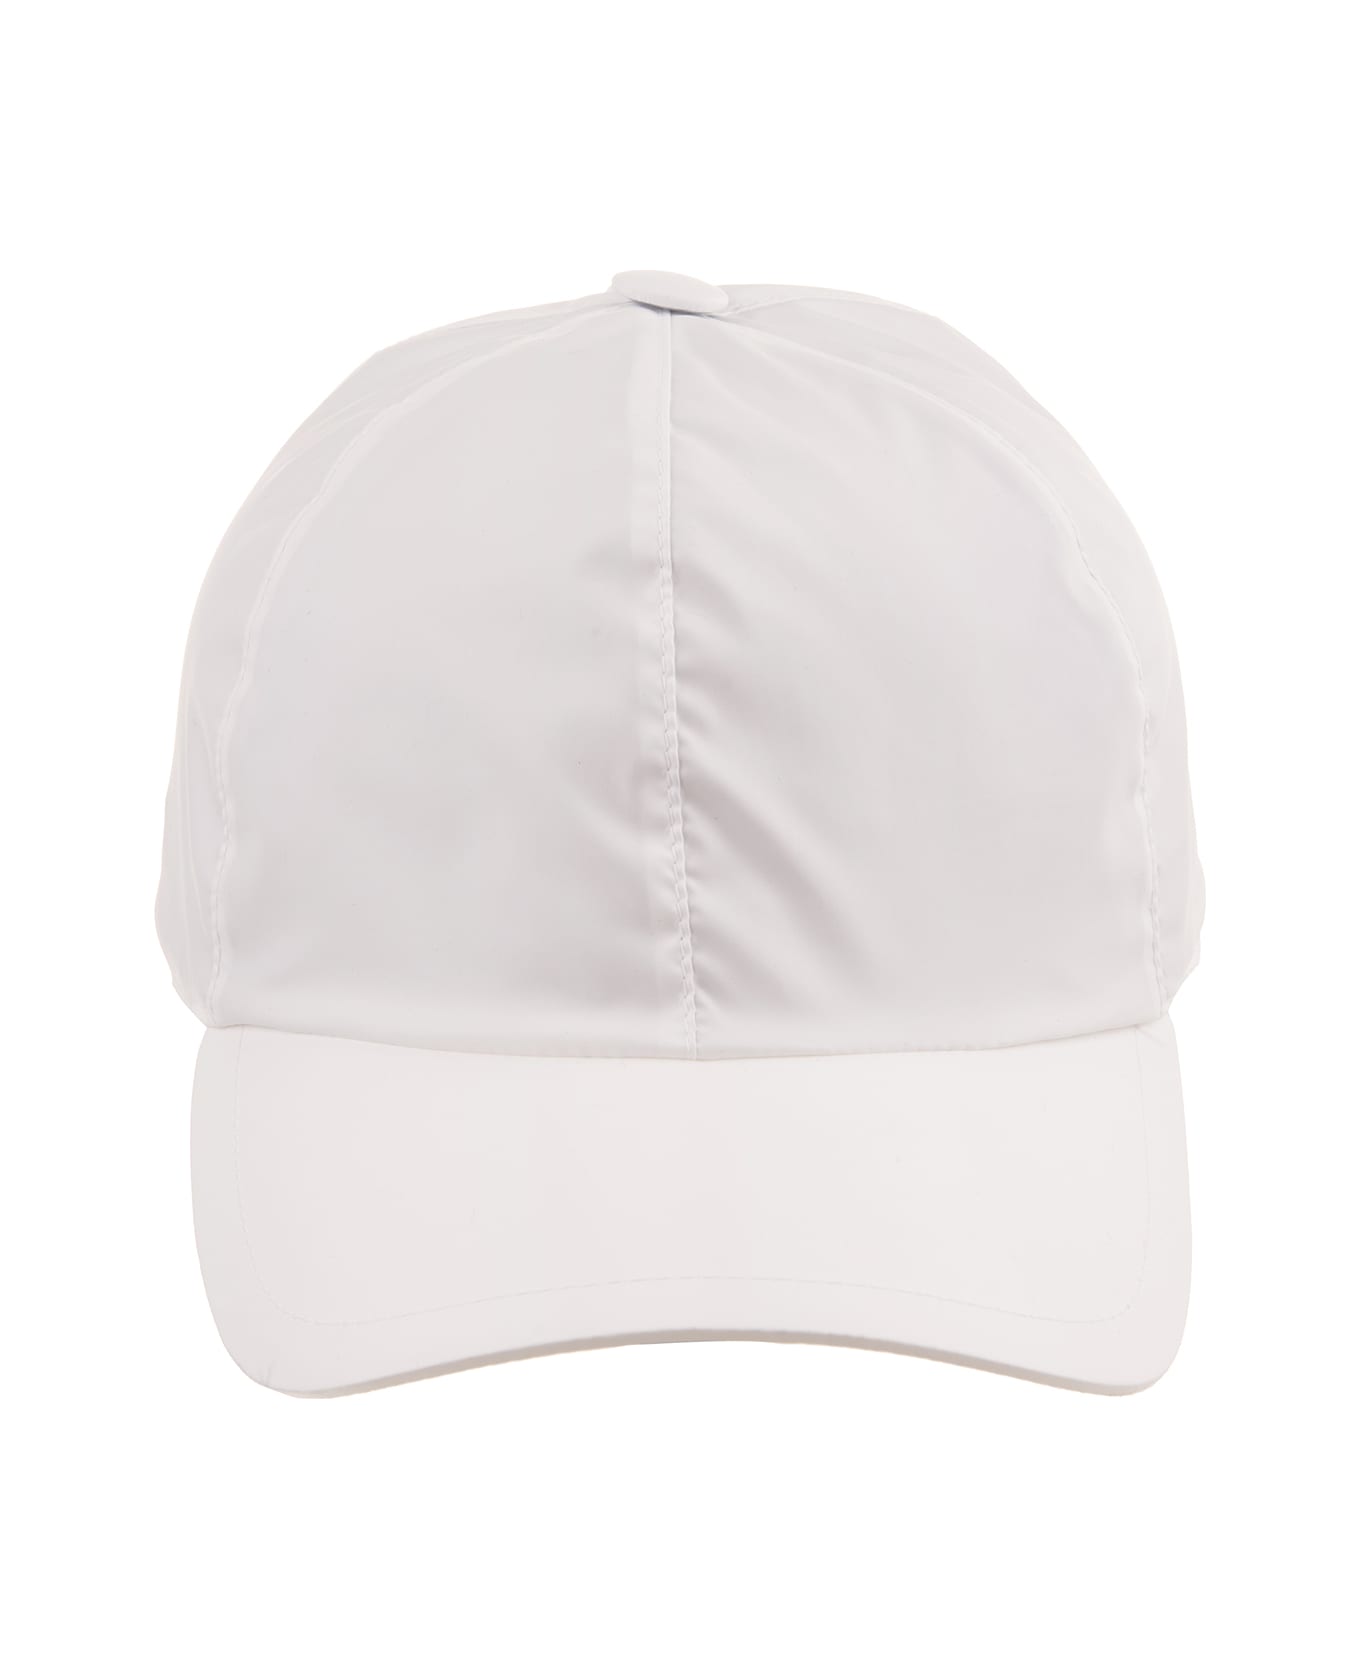 Fedeli White Nylon Baseball Hat - White